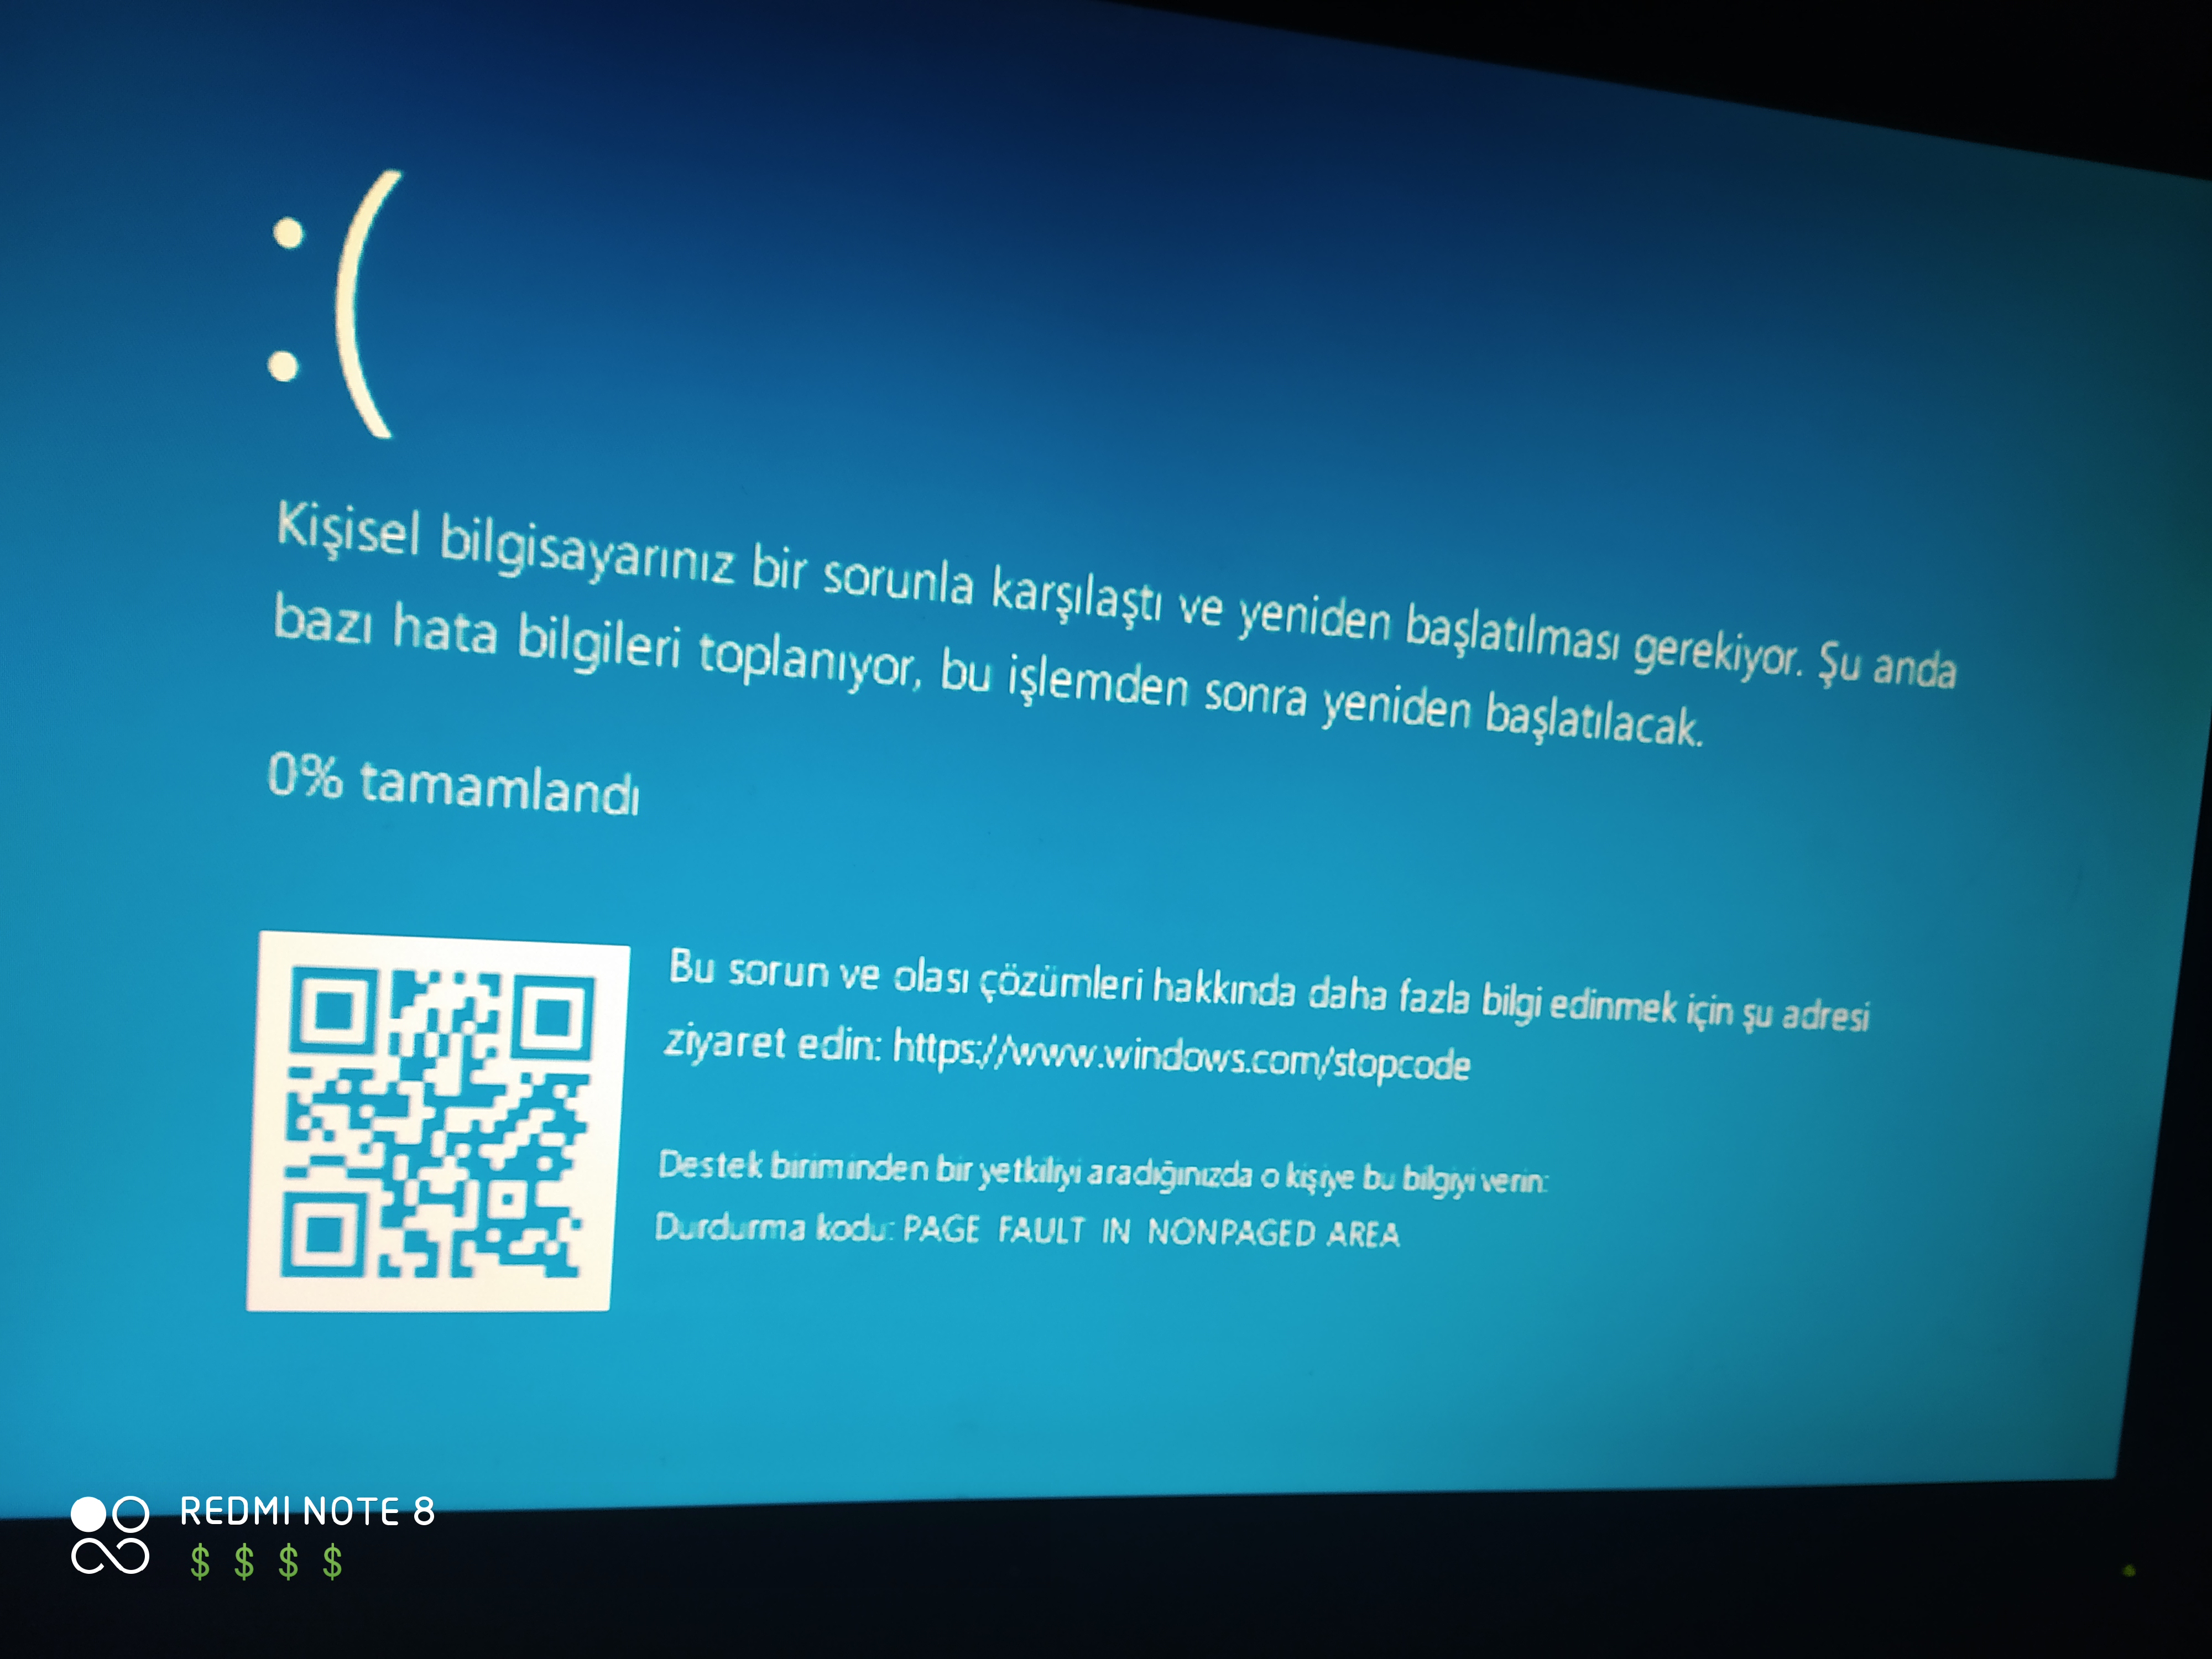 "синий экран смерти": что делать? windows 7 - коды ошибок, решение проблем. переустановка windows 7 :: syl.ru